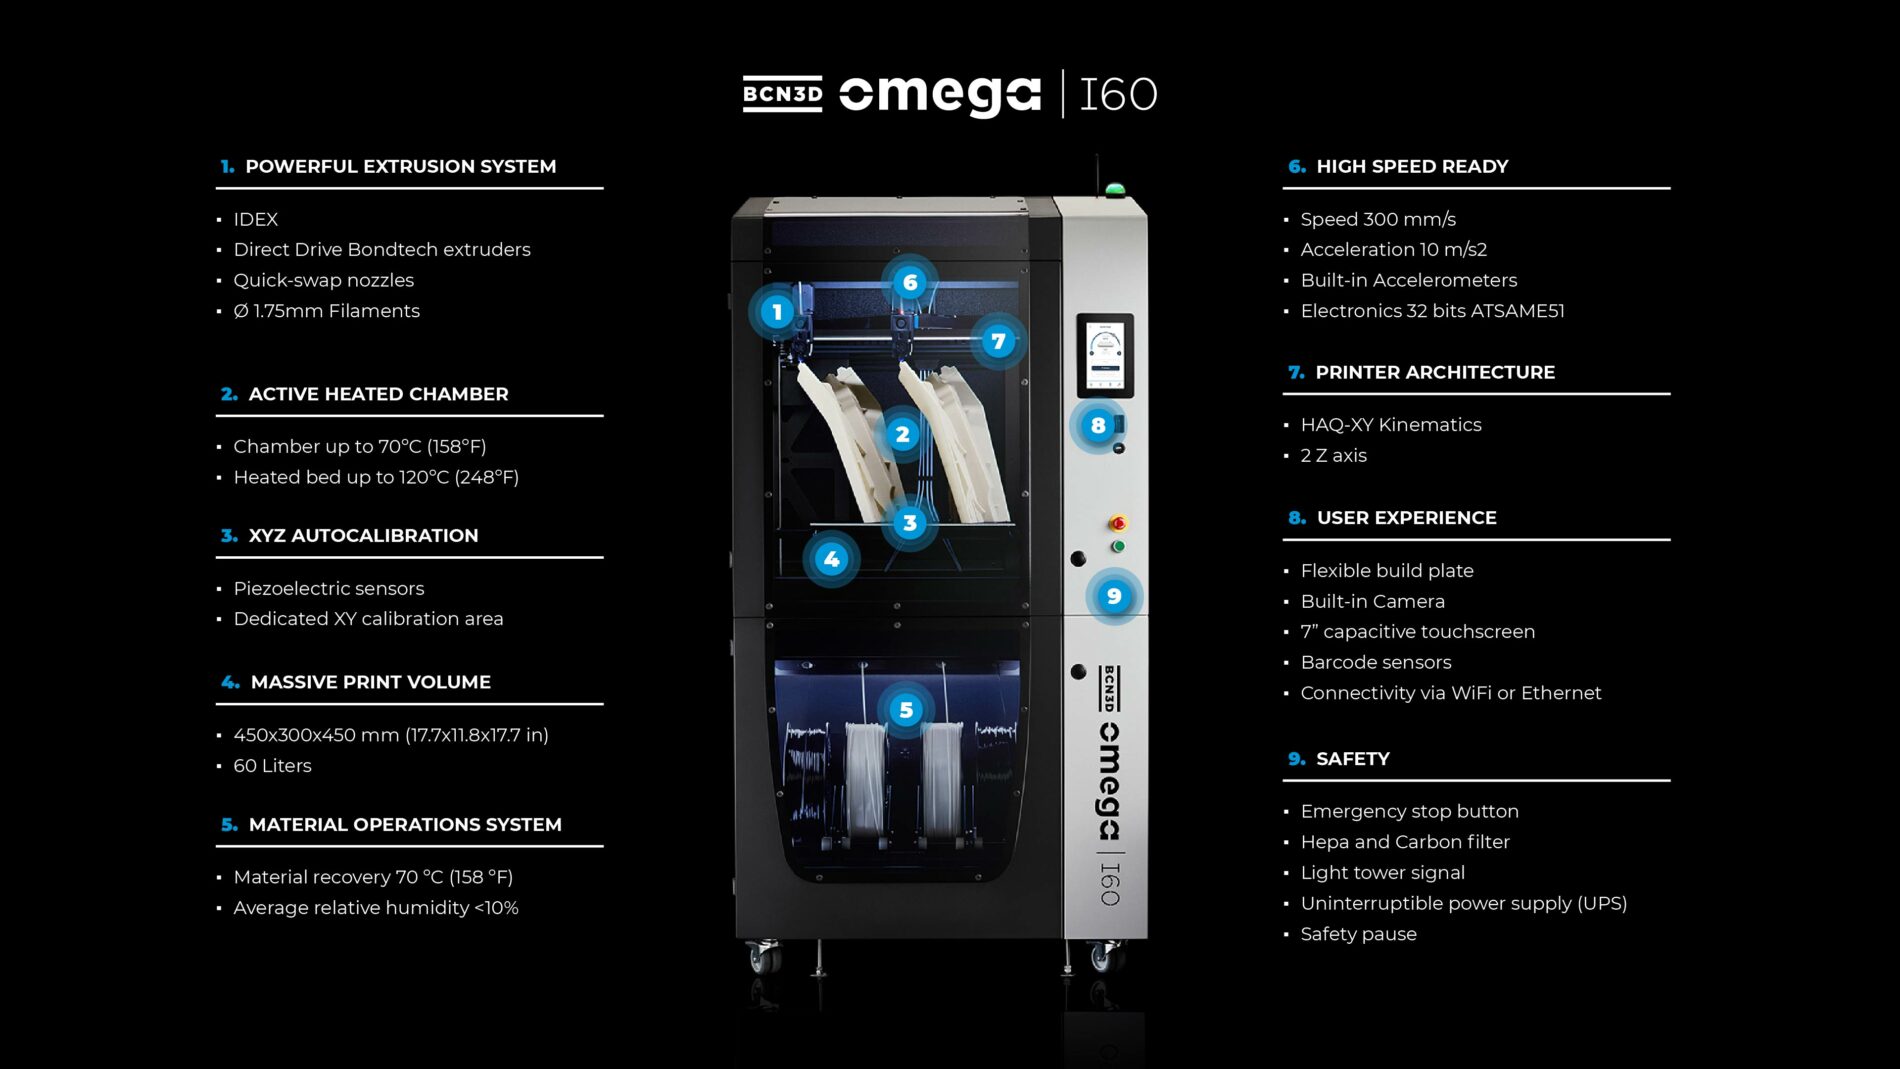 BCN3D Omega I60 Industrial 3D Printer Features recap2